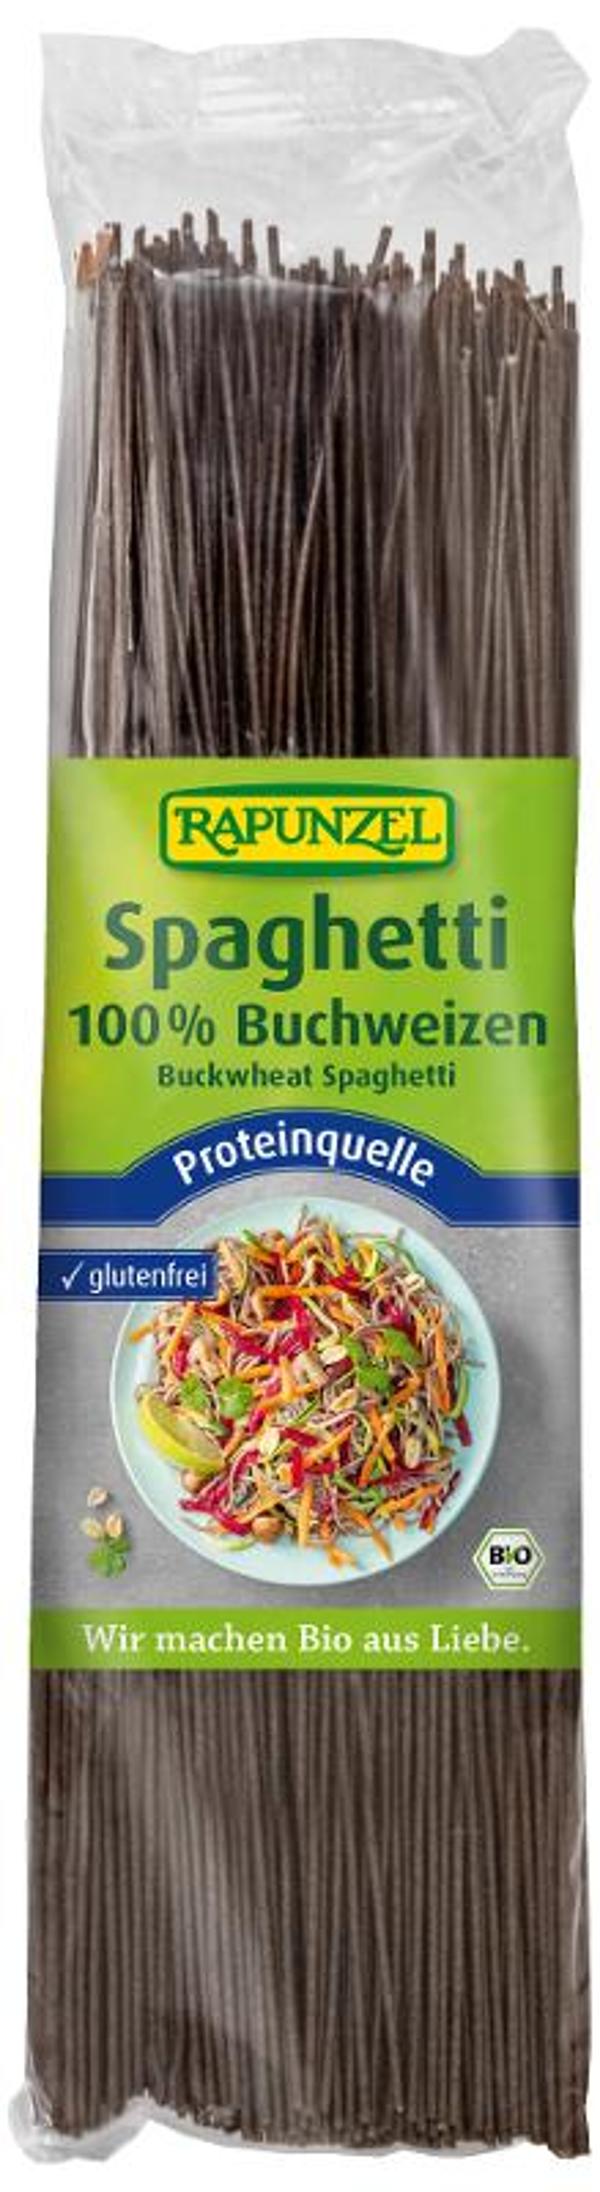 Produktfoto zu Buchweizen Spaghetti